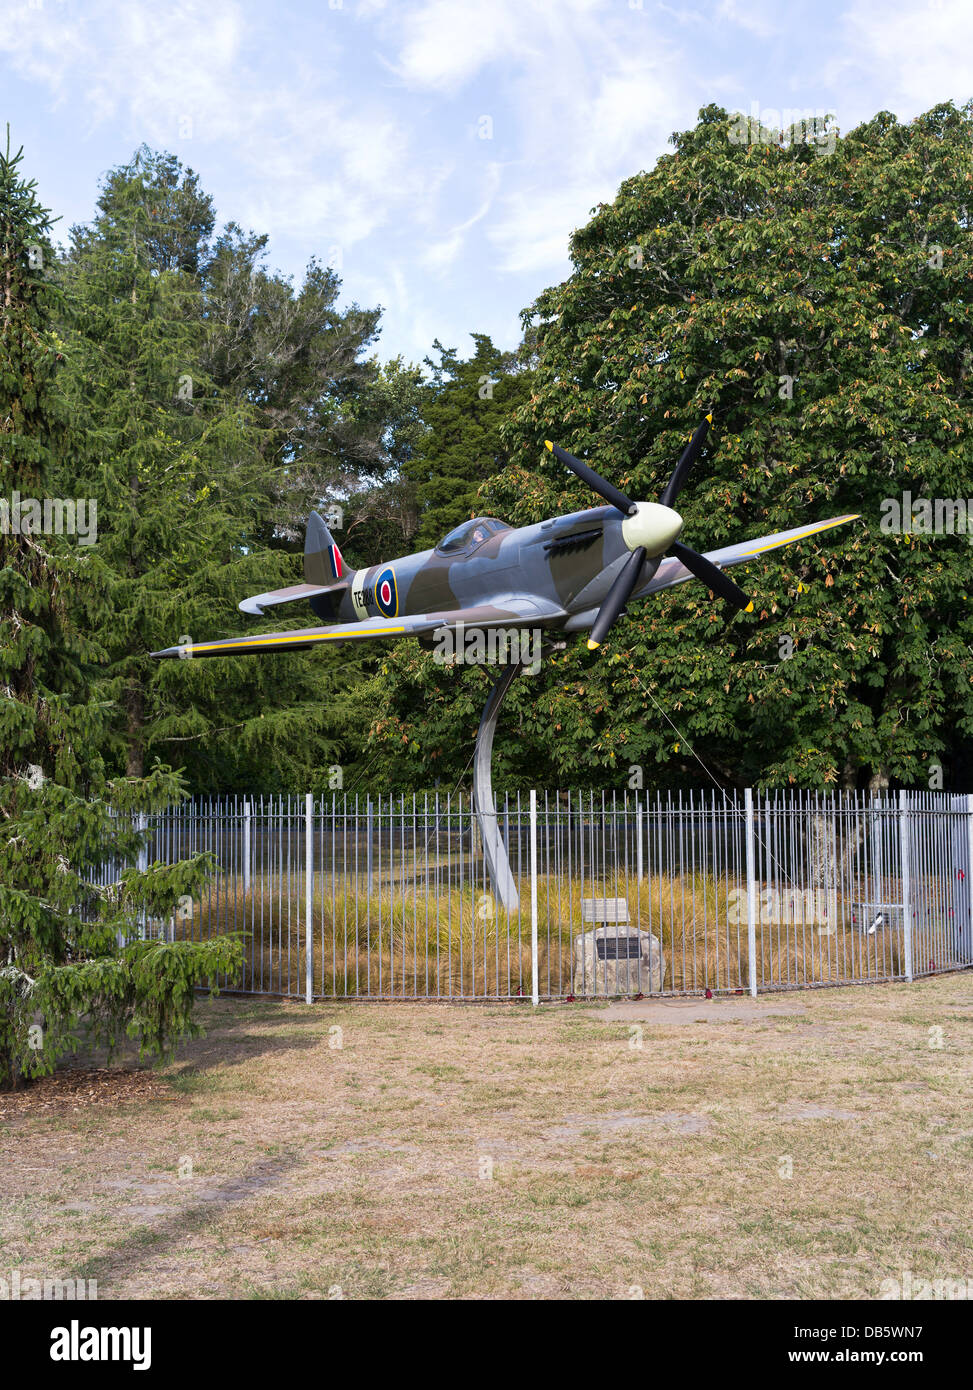 dh Memorial Park avion HAMILTON NOUVELLE-ZÉLANDE NZ Spitfire mk xvi réplique avion ww2 avion de chasse avion de guerre mondiale deux avions Banque D'Images